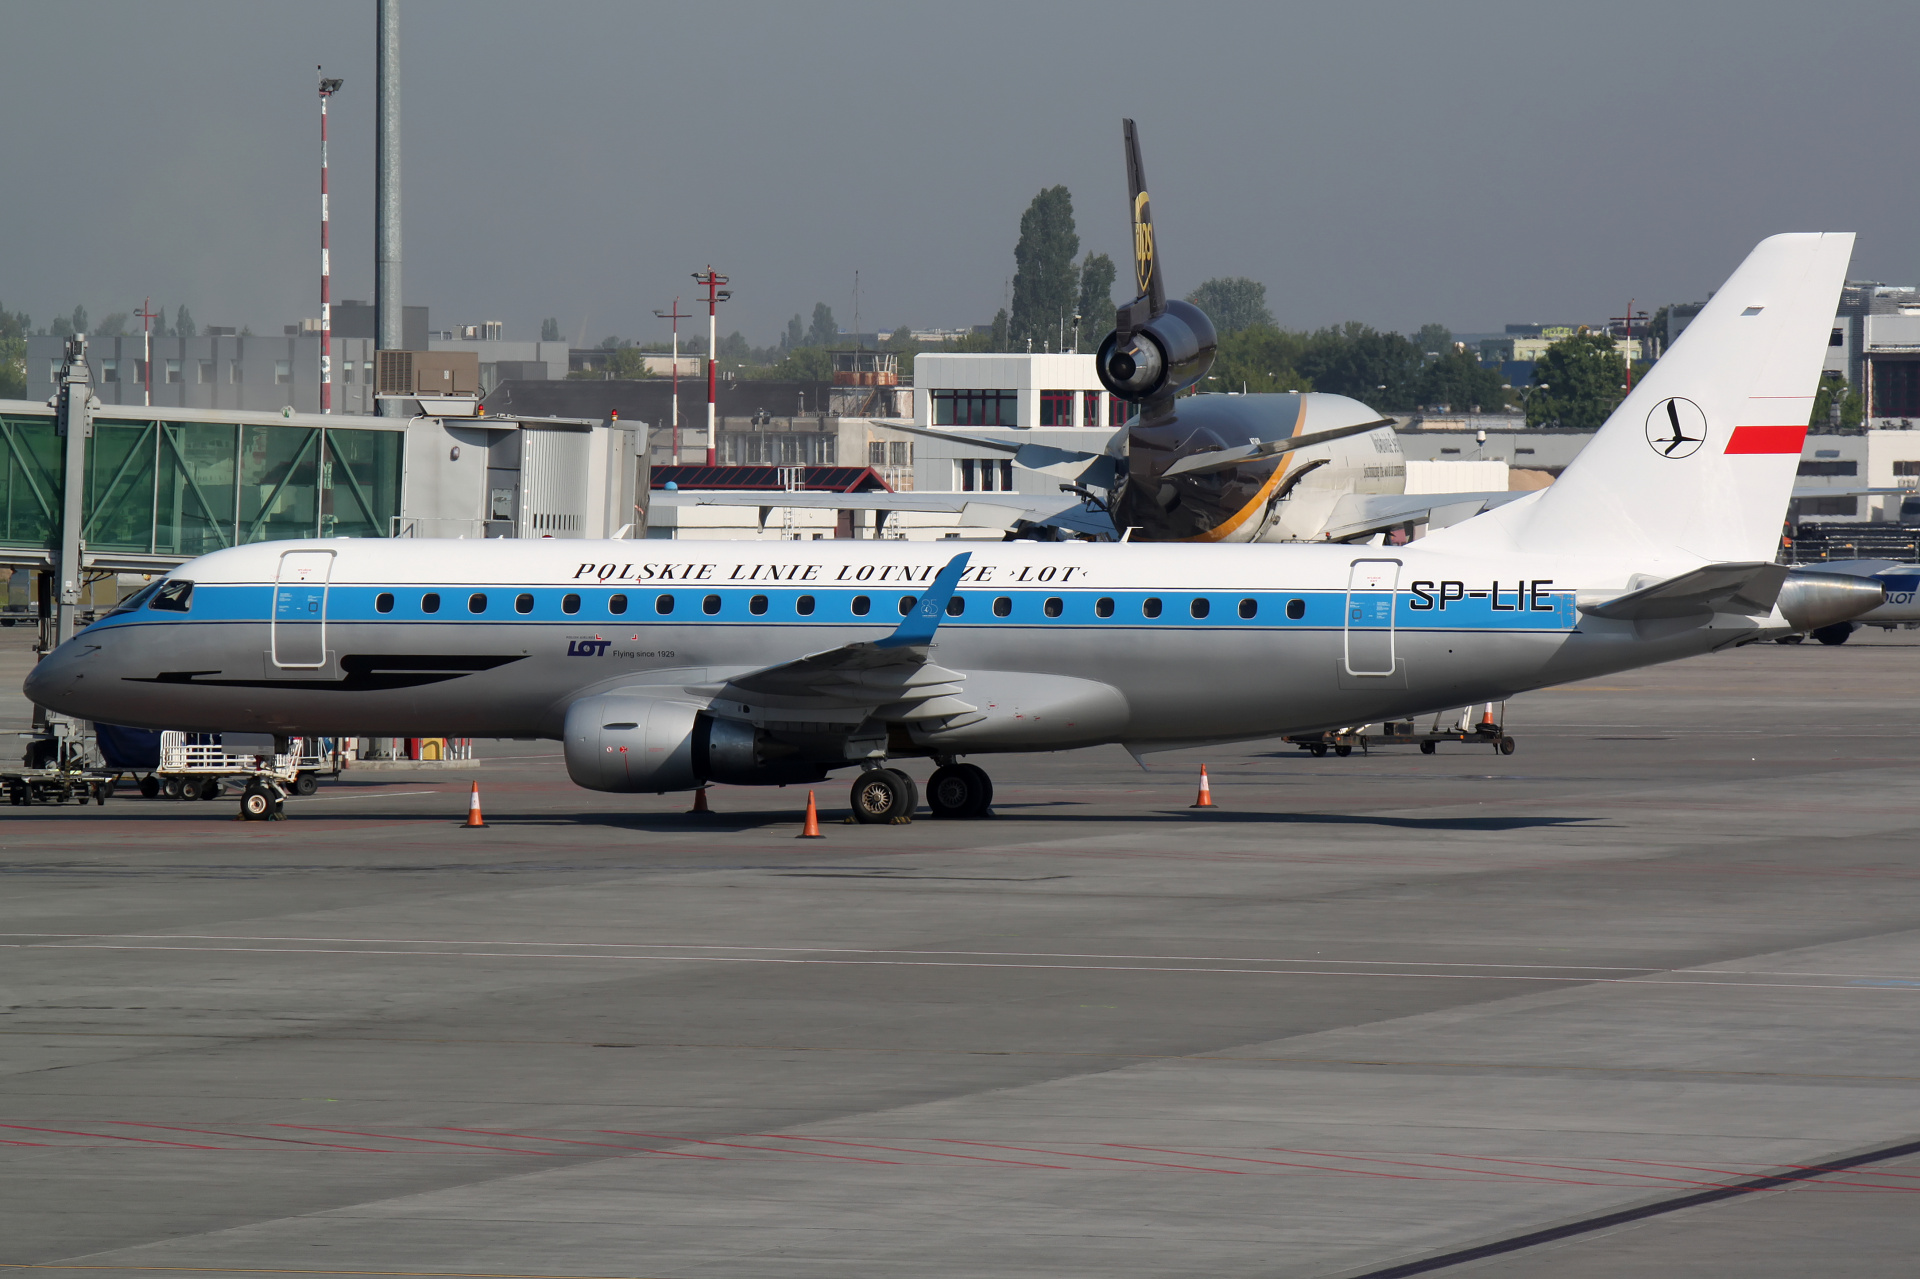 SP-LIE (malowanie retro) (Samoloty » Spotting na EPWA » Embraer E175 » Polskie Linie Lotnicze LOT)